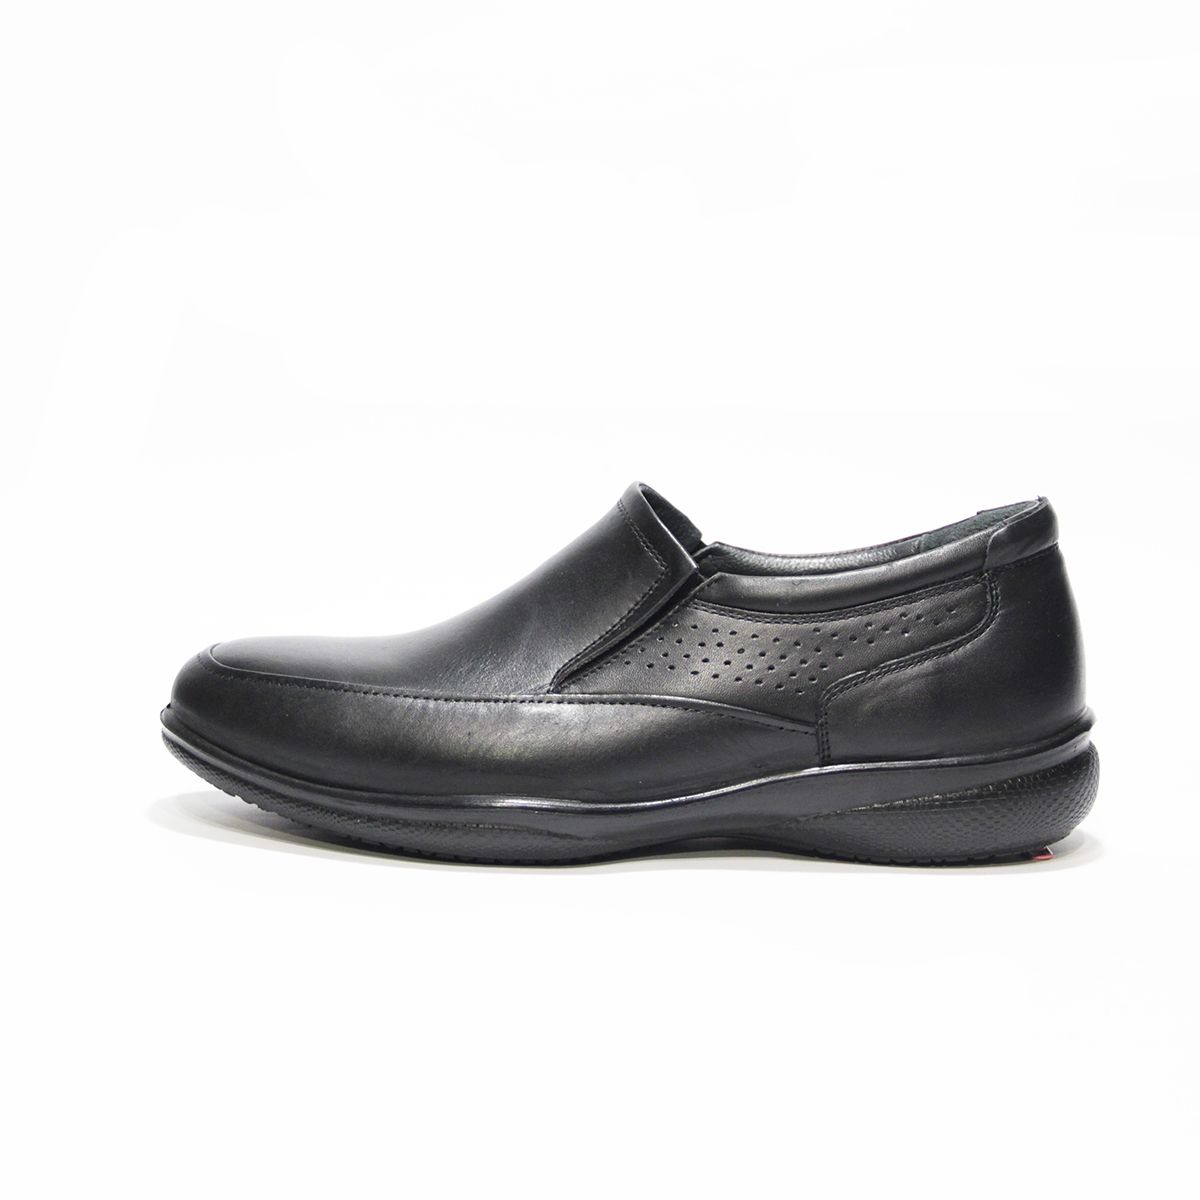 کفش روزمره مردانه فرزین کد TKM 0020 رنگ مشکی -  - 1